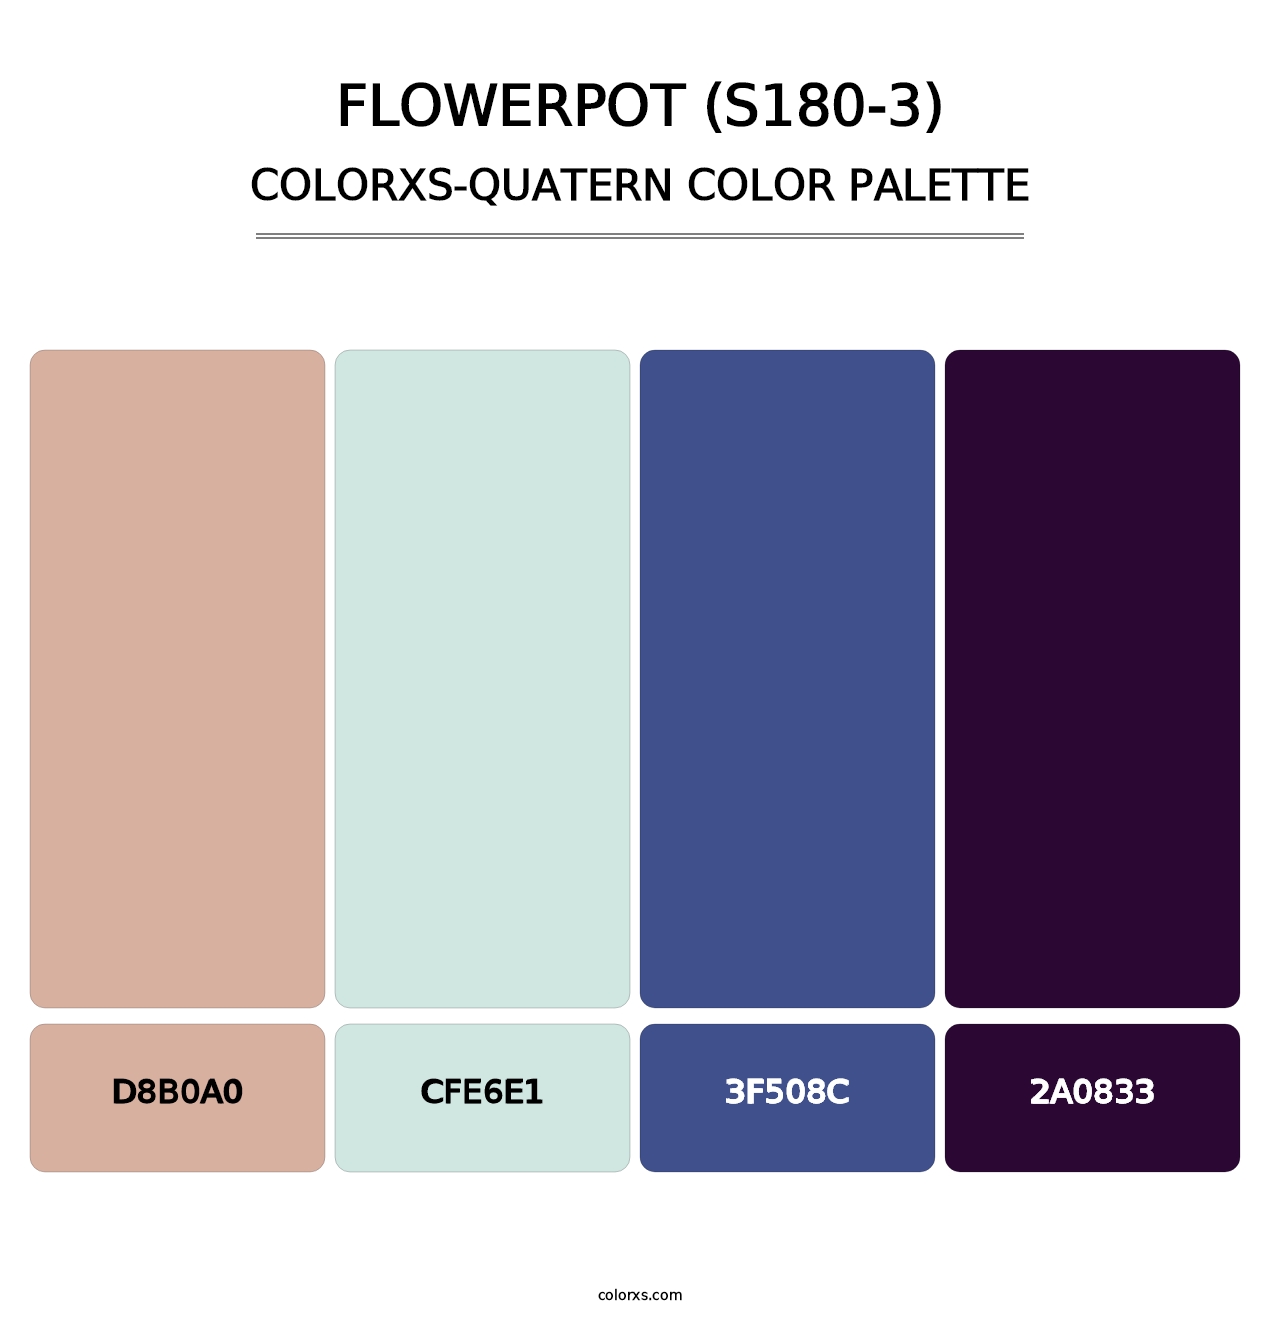 Flowerpot (S180-3) - Colorxs Quatern Palette